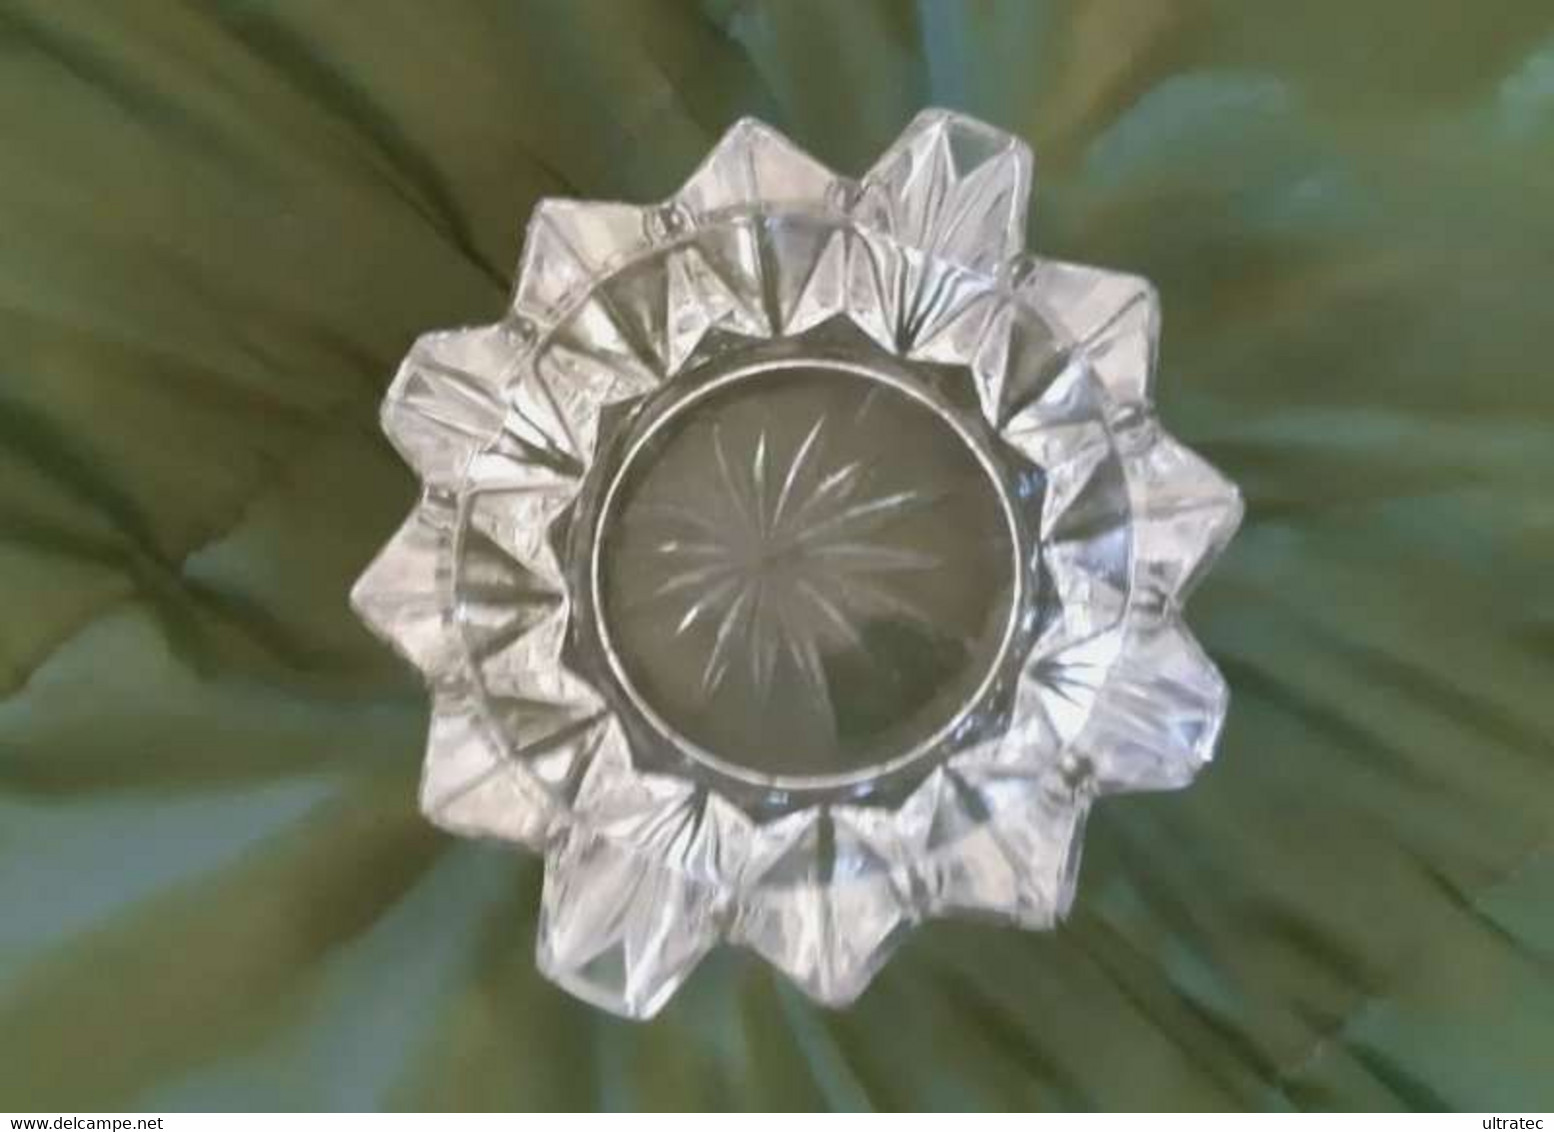 Uralter Kristall Glas Antik Aschenbecher Aus Den 1940 Er Jahren Sehr Guter Zustand - Glass